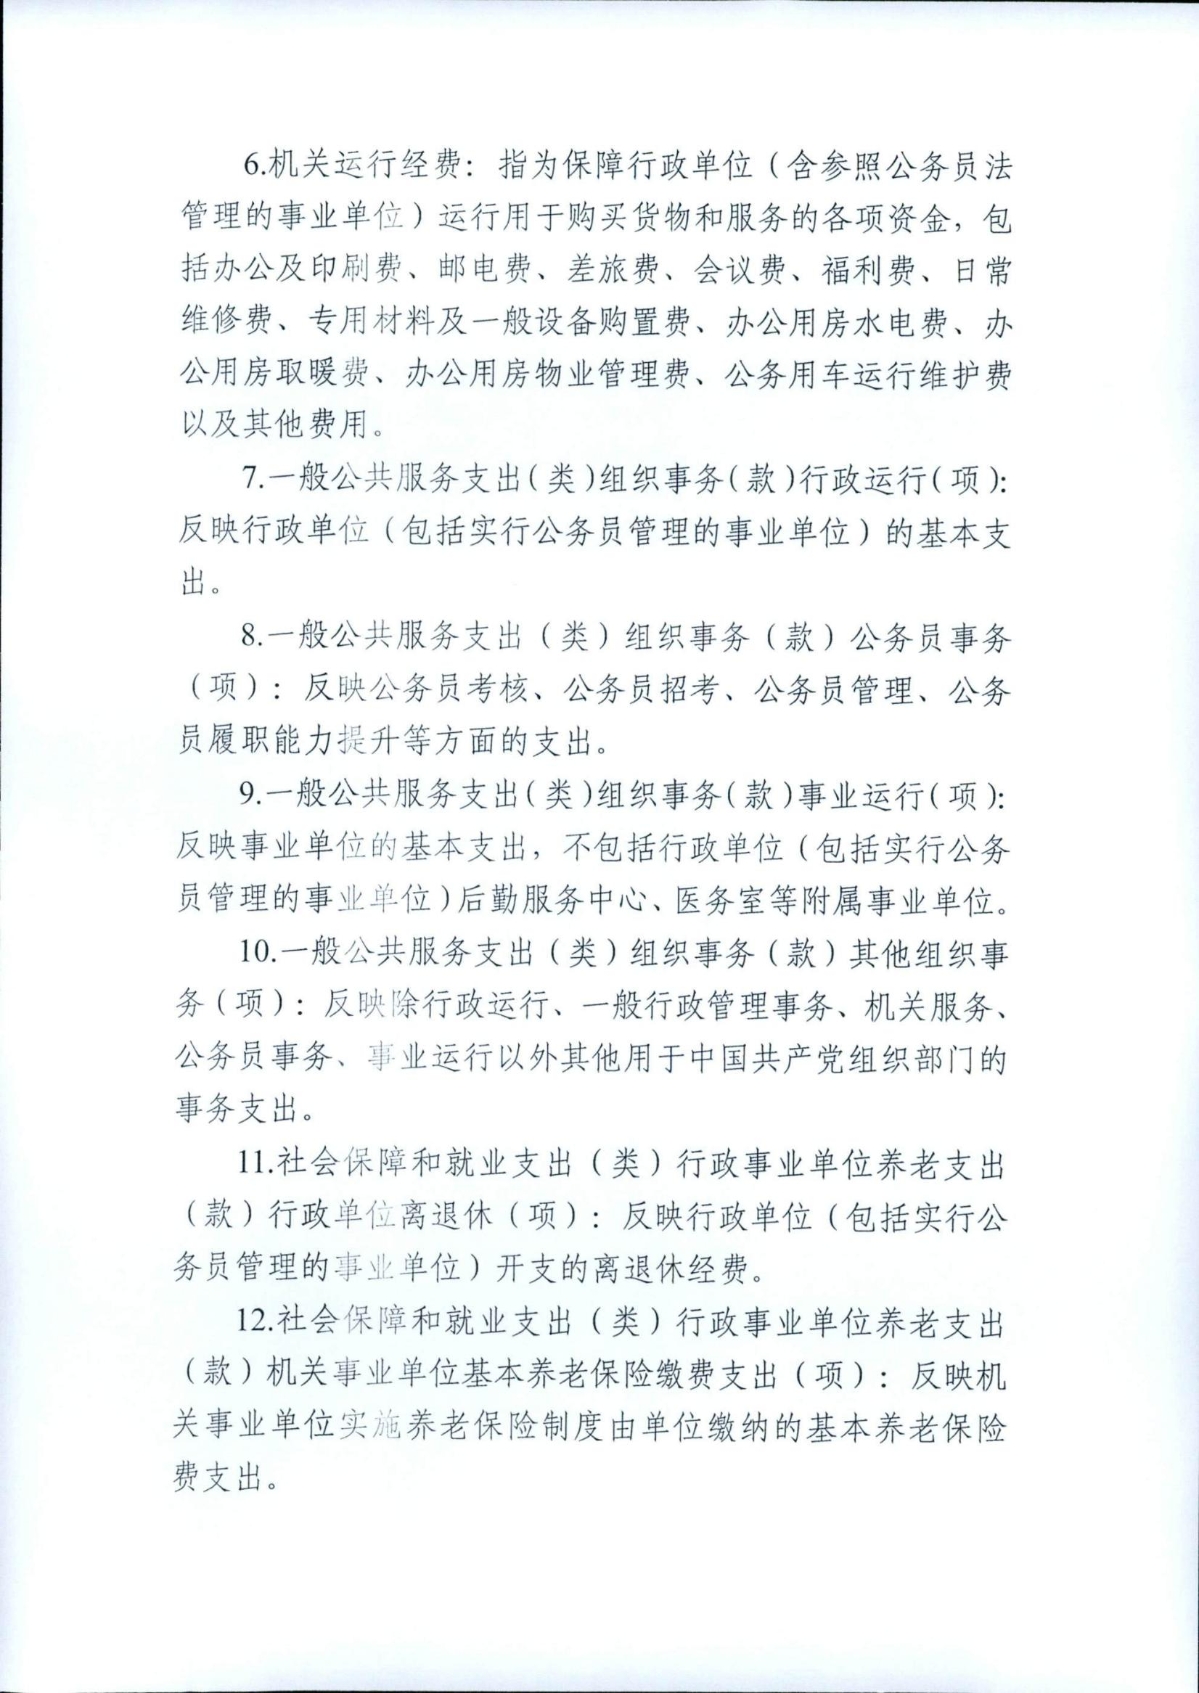 中共浙江省委组织部2022年部门预算_10.jpg